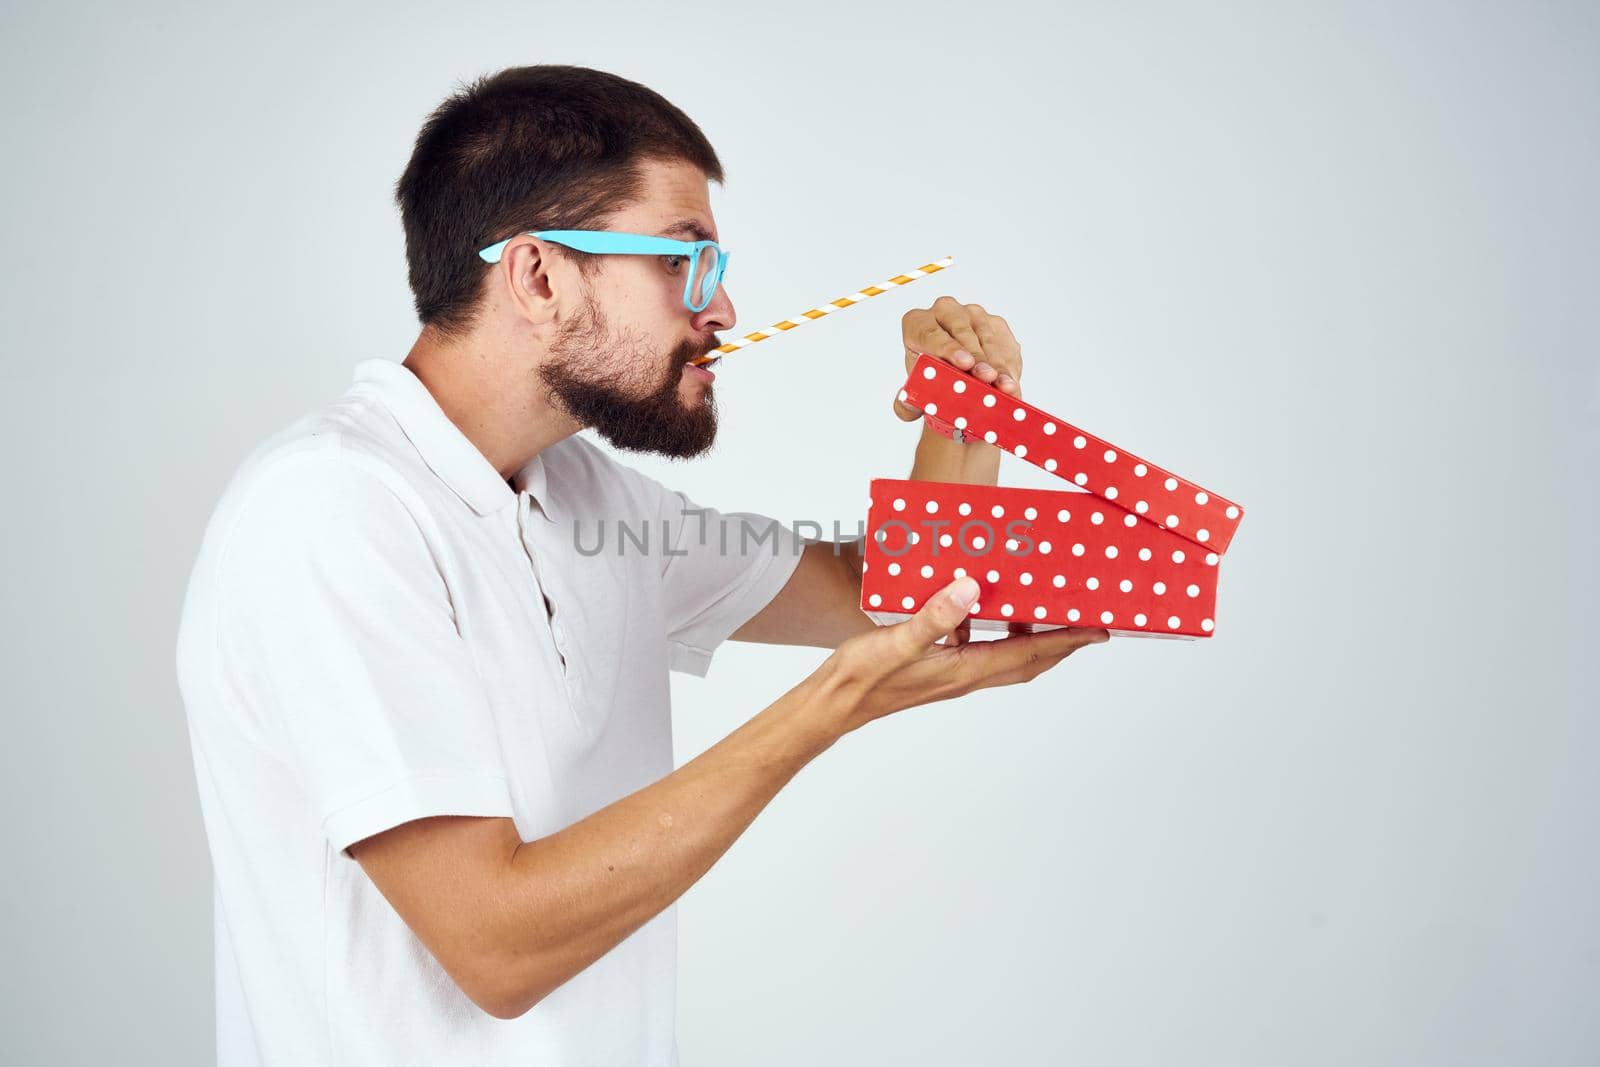 man wearing glasses gift box holiday fun light background by Vichizh